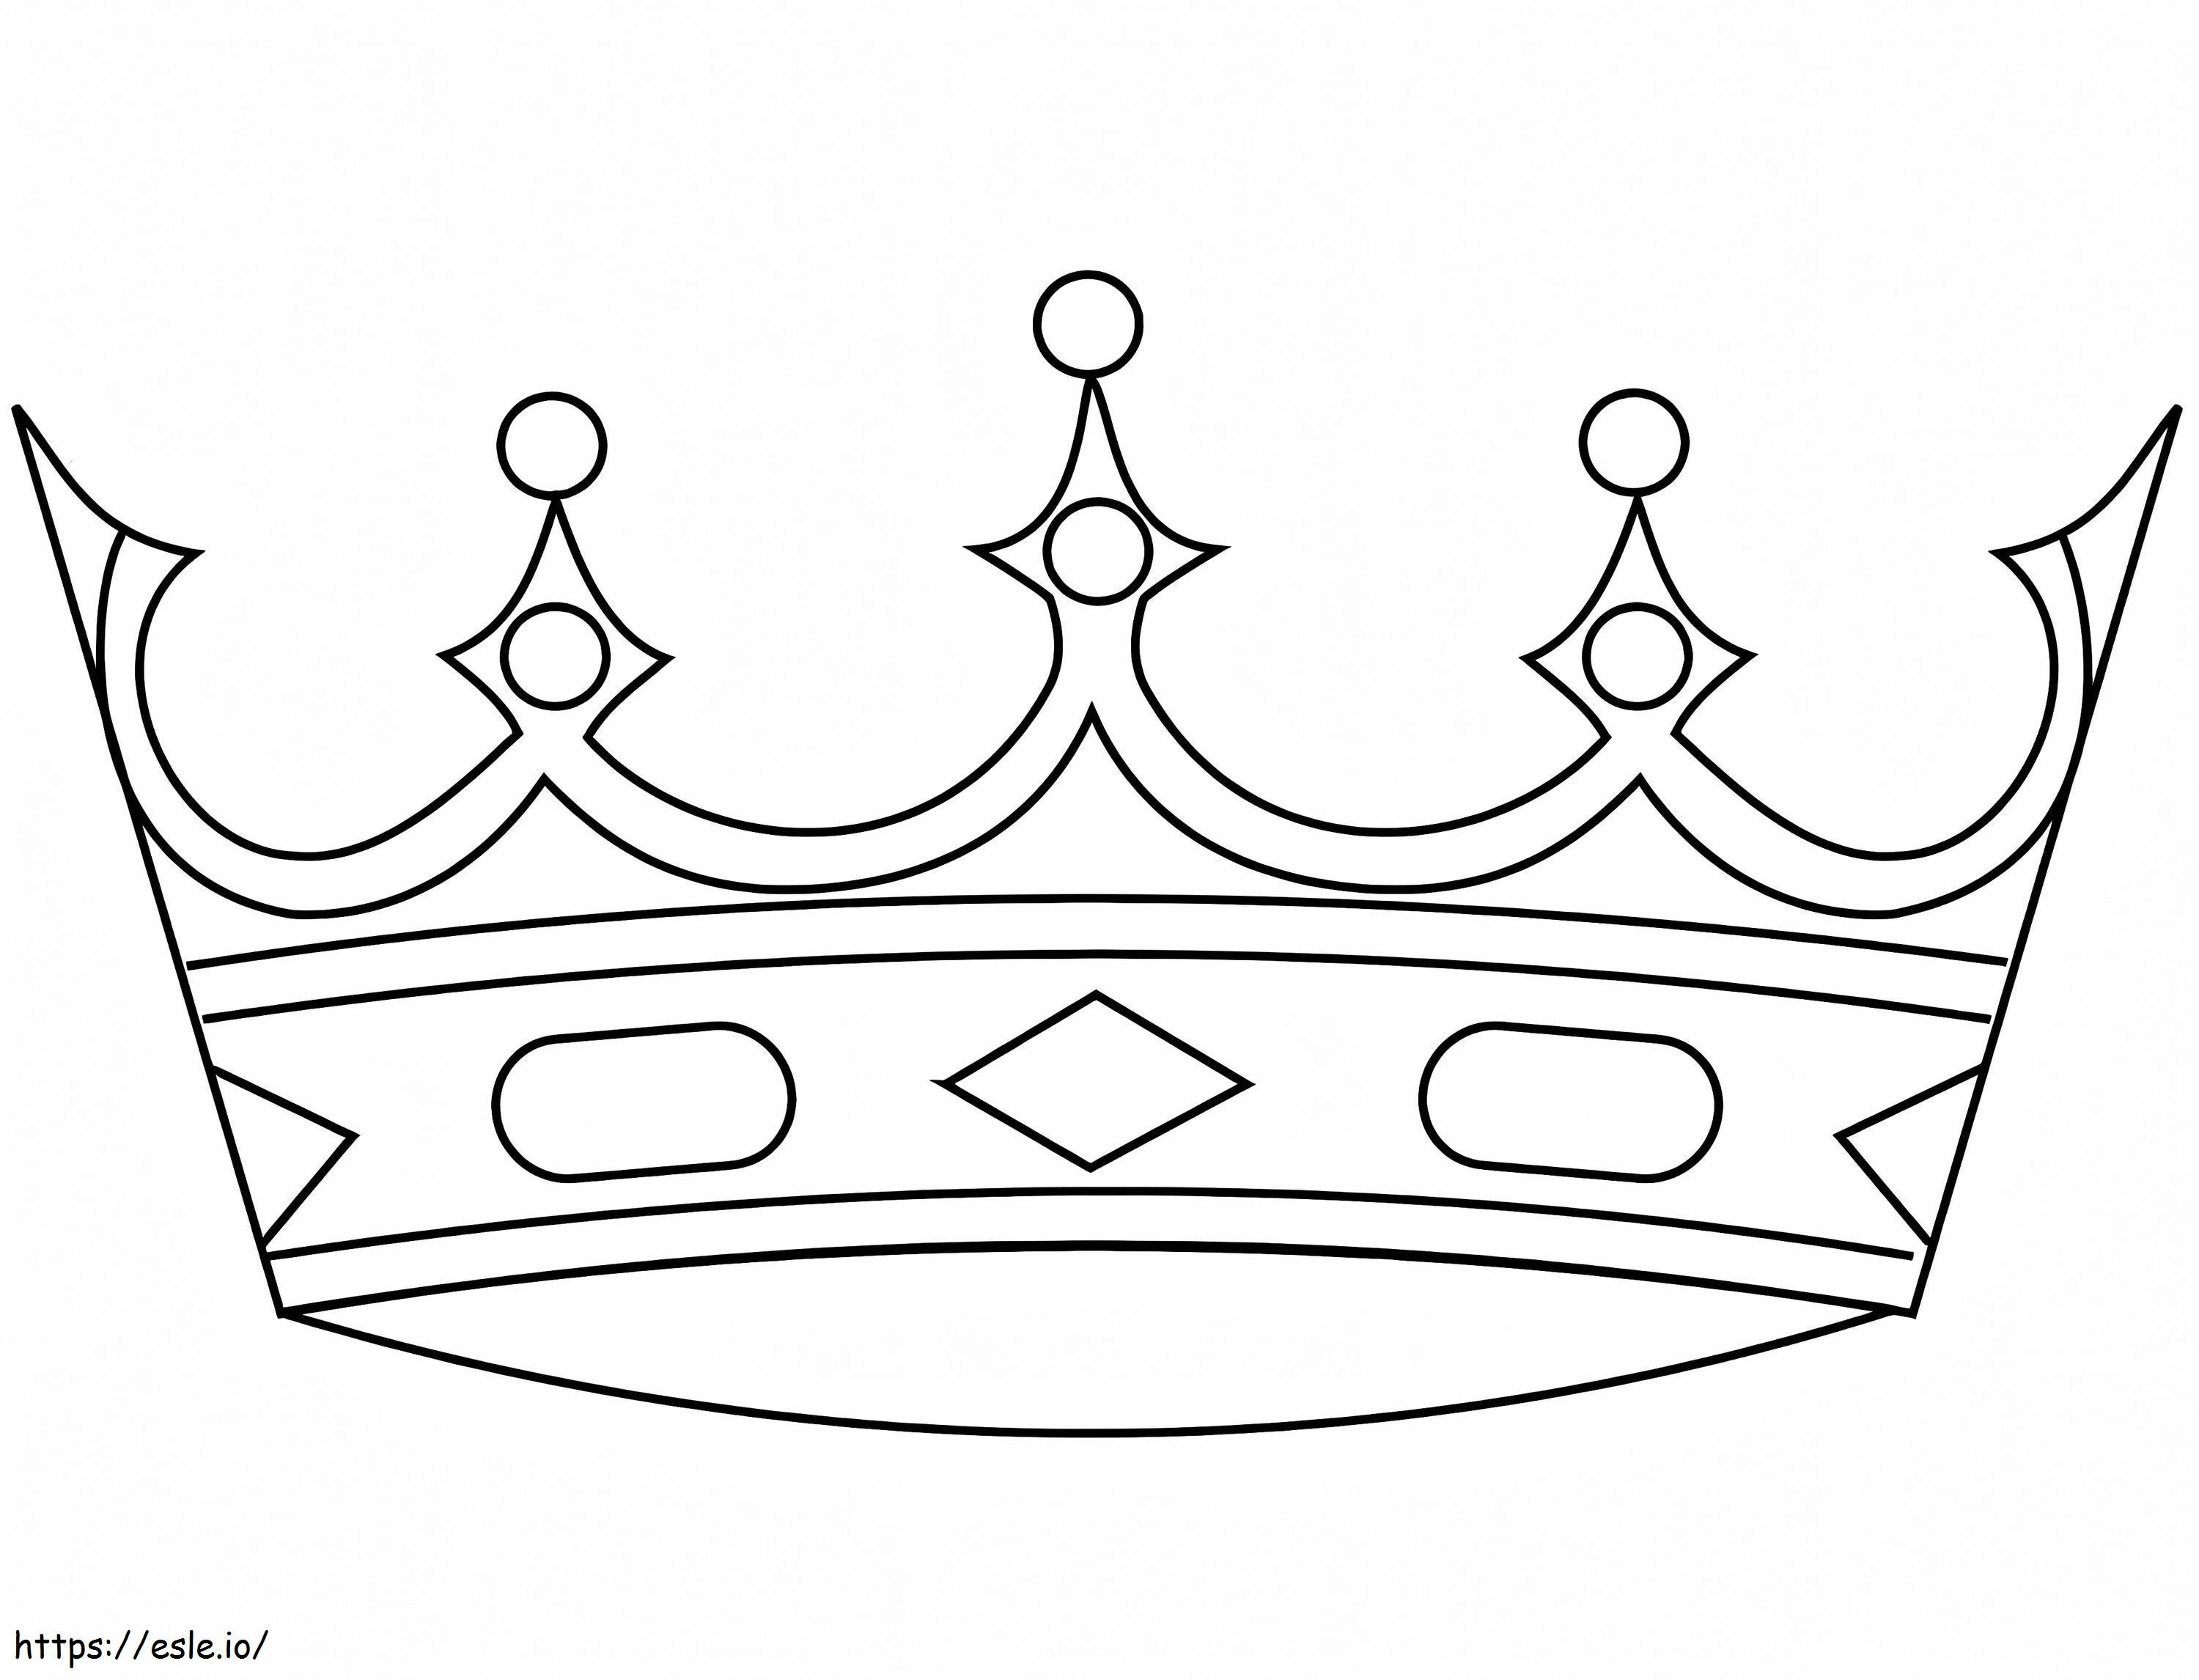 Krone ausmalbilder